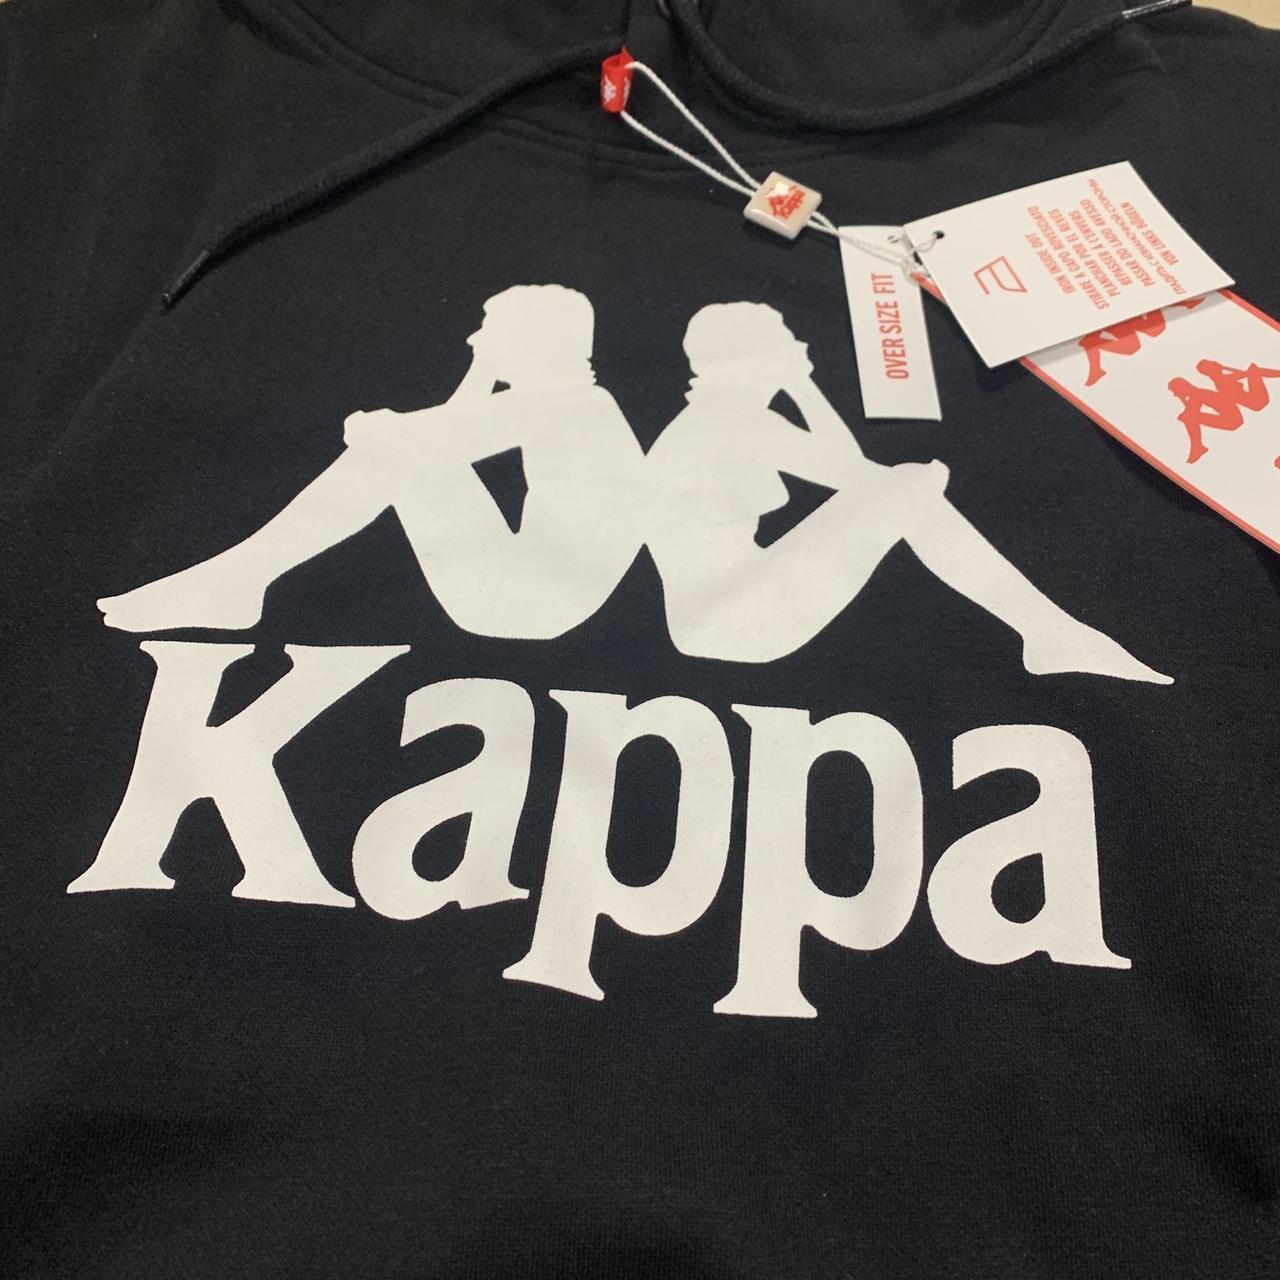 Kappa basic logo hoodie👕 Black/white🎨 Size... - Depop